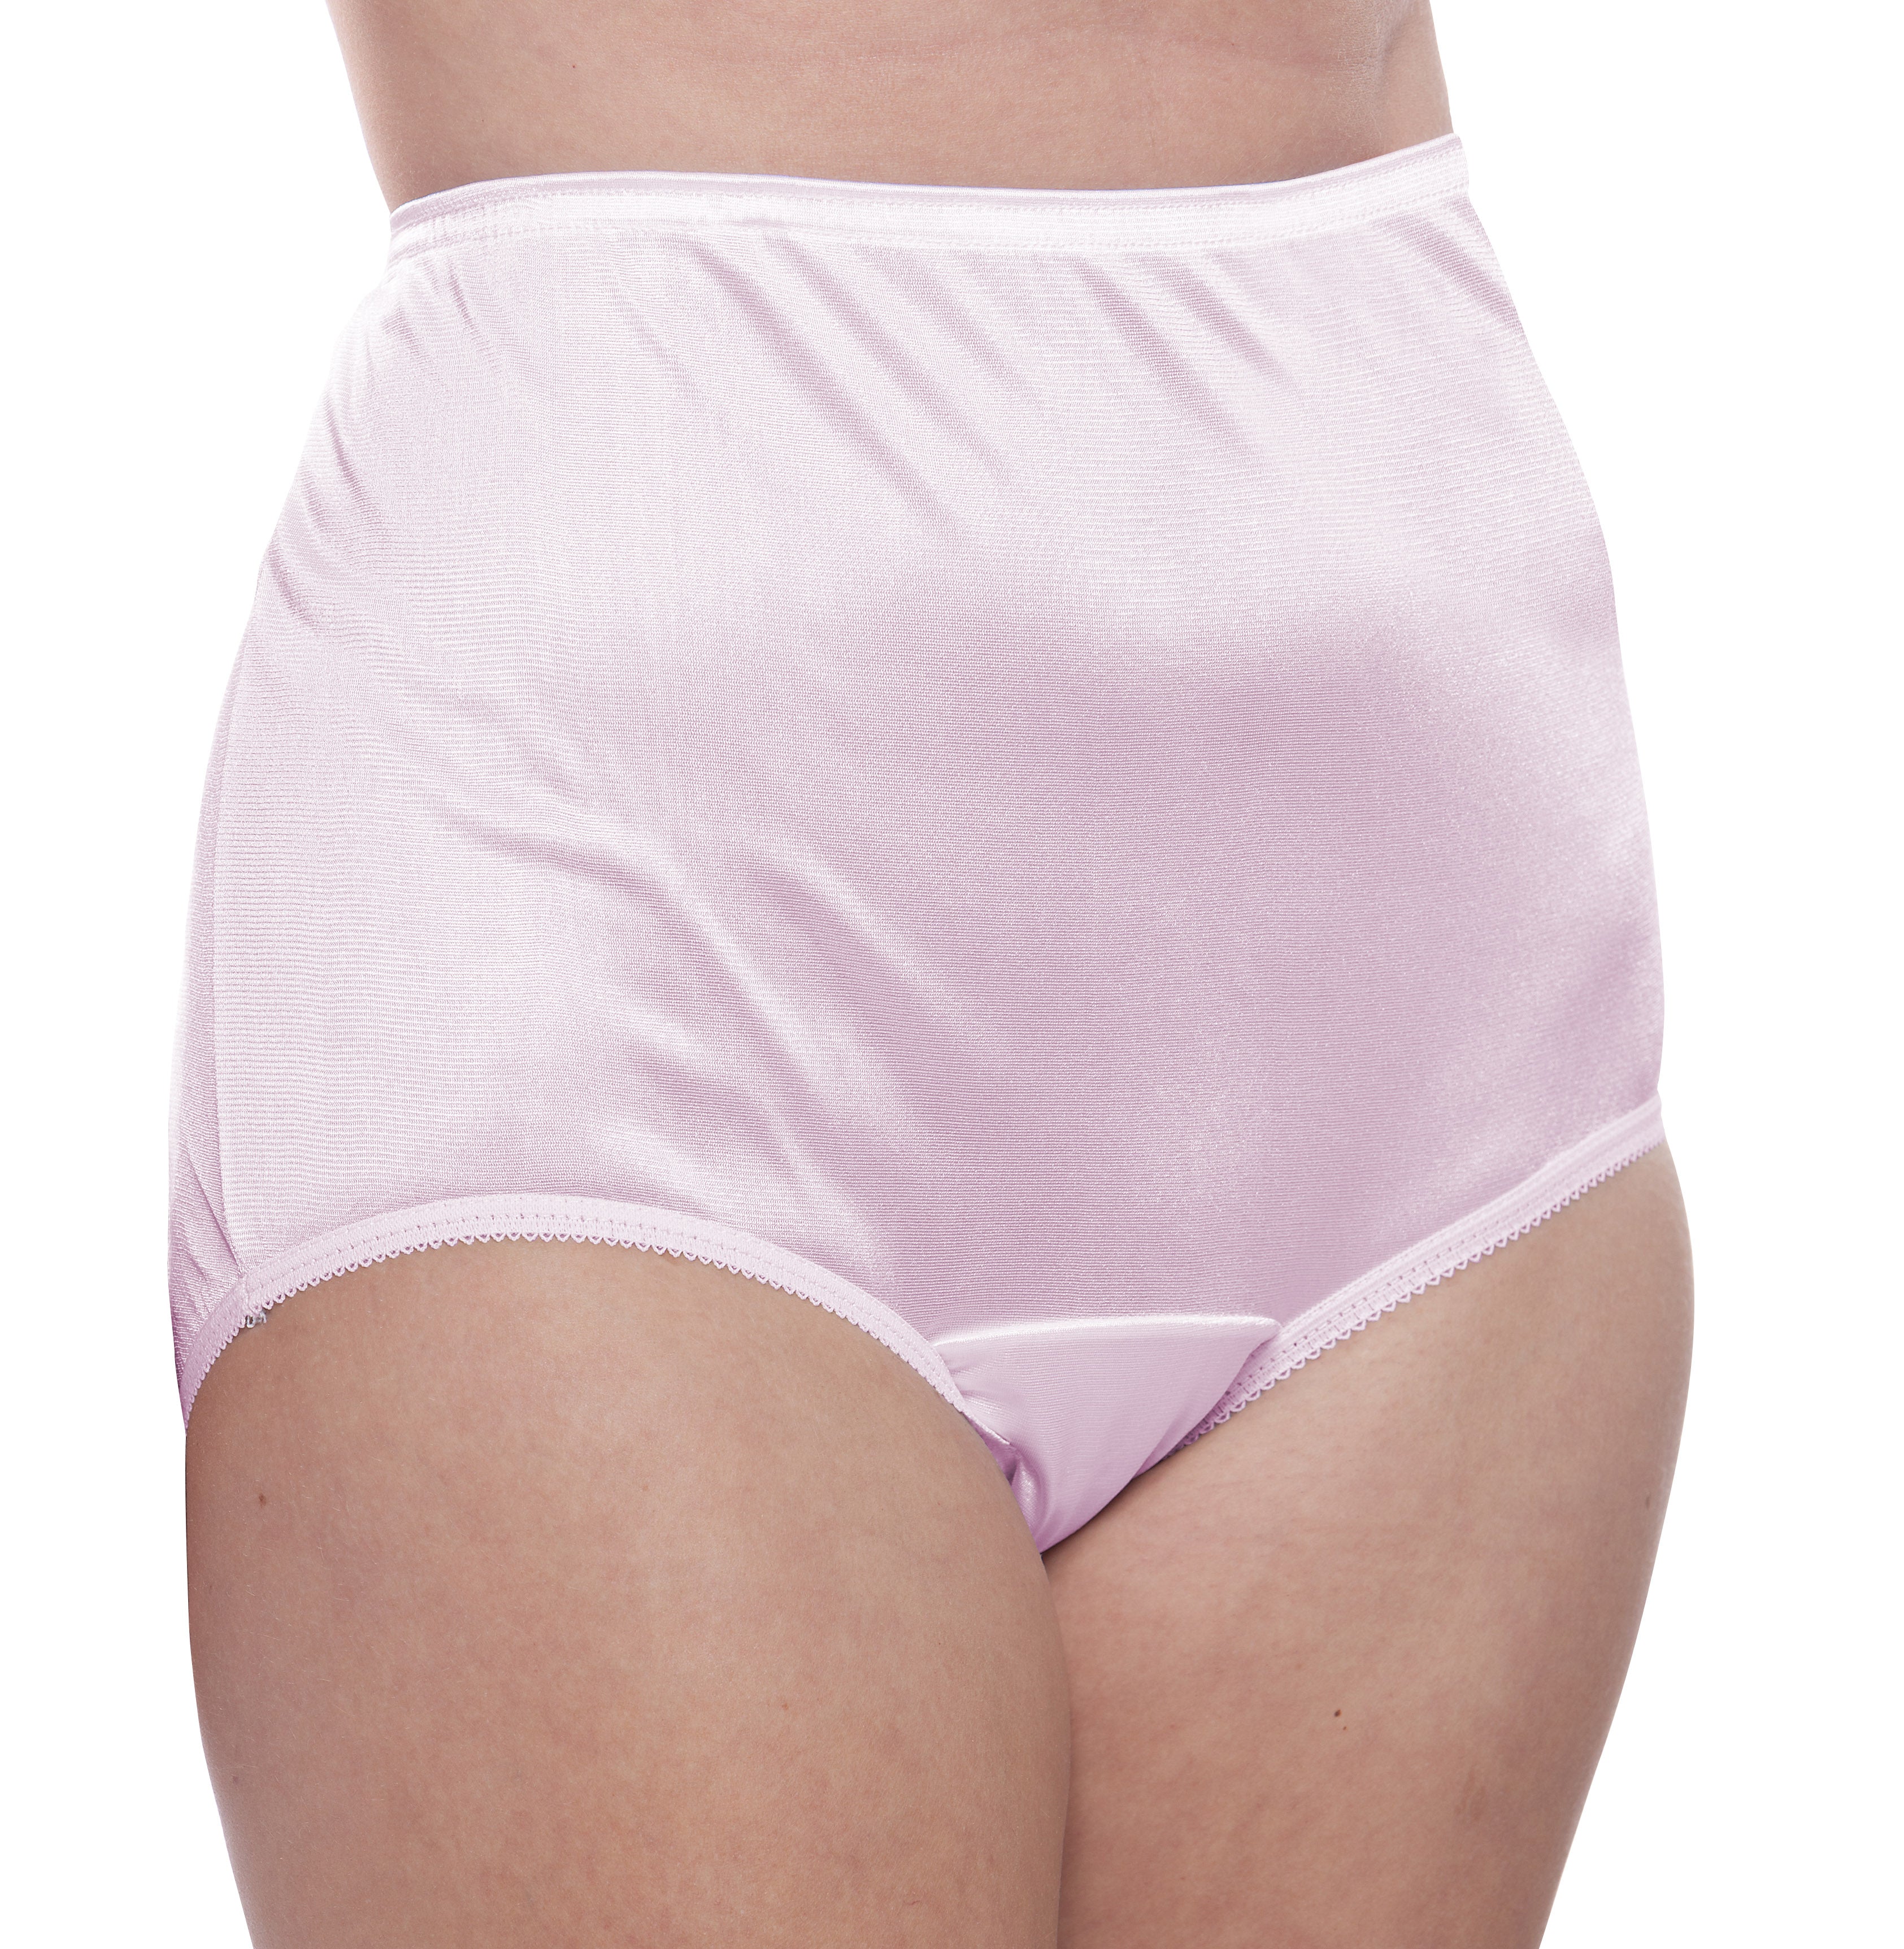 Plain Jane Nylon Panty Surprise Color 10 Pack